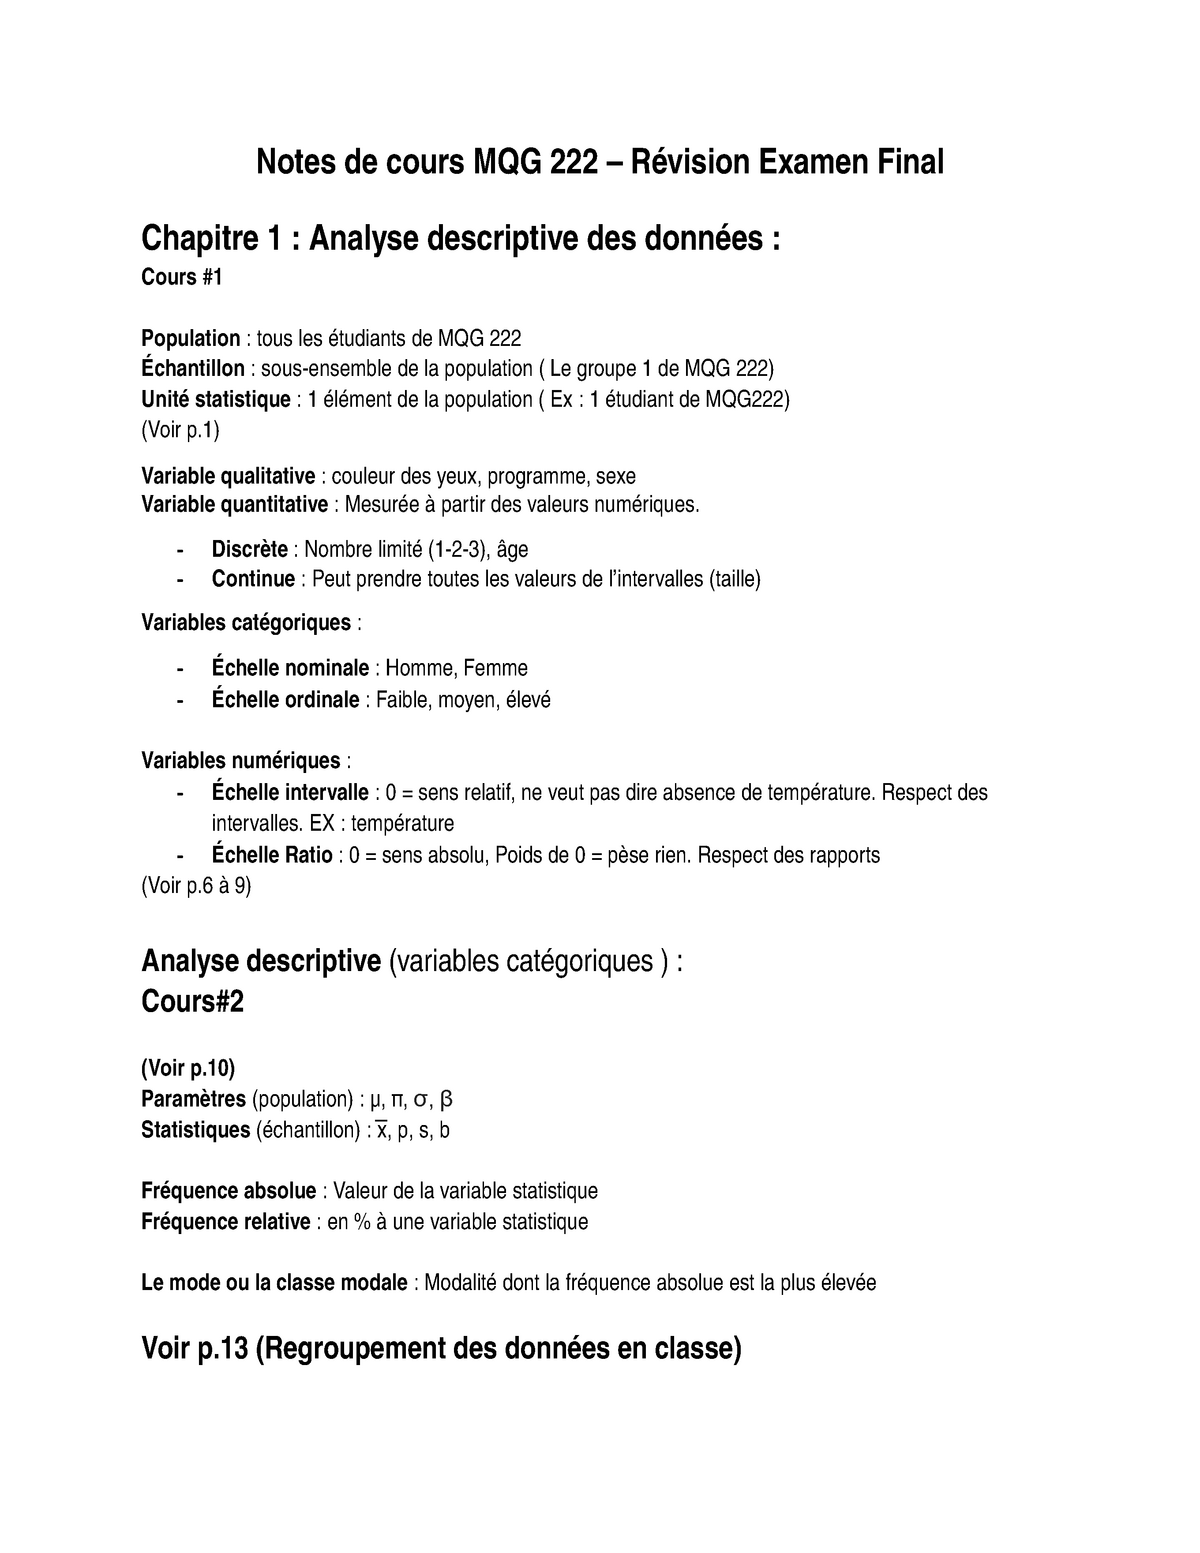 Notes Resume Du Cours Mqg222 Studocu